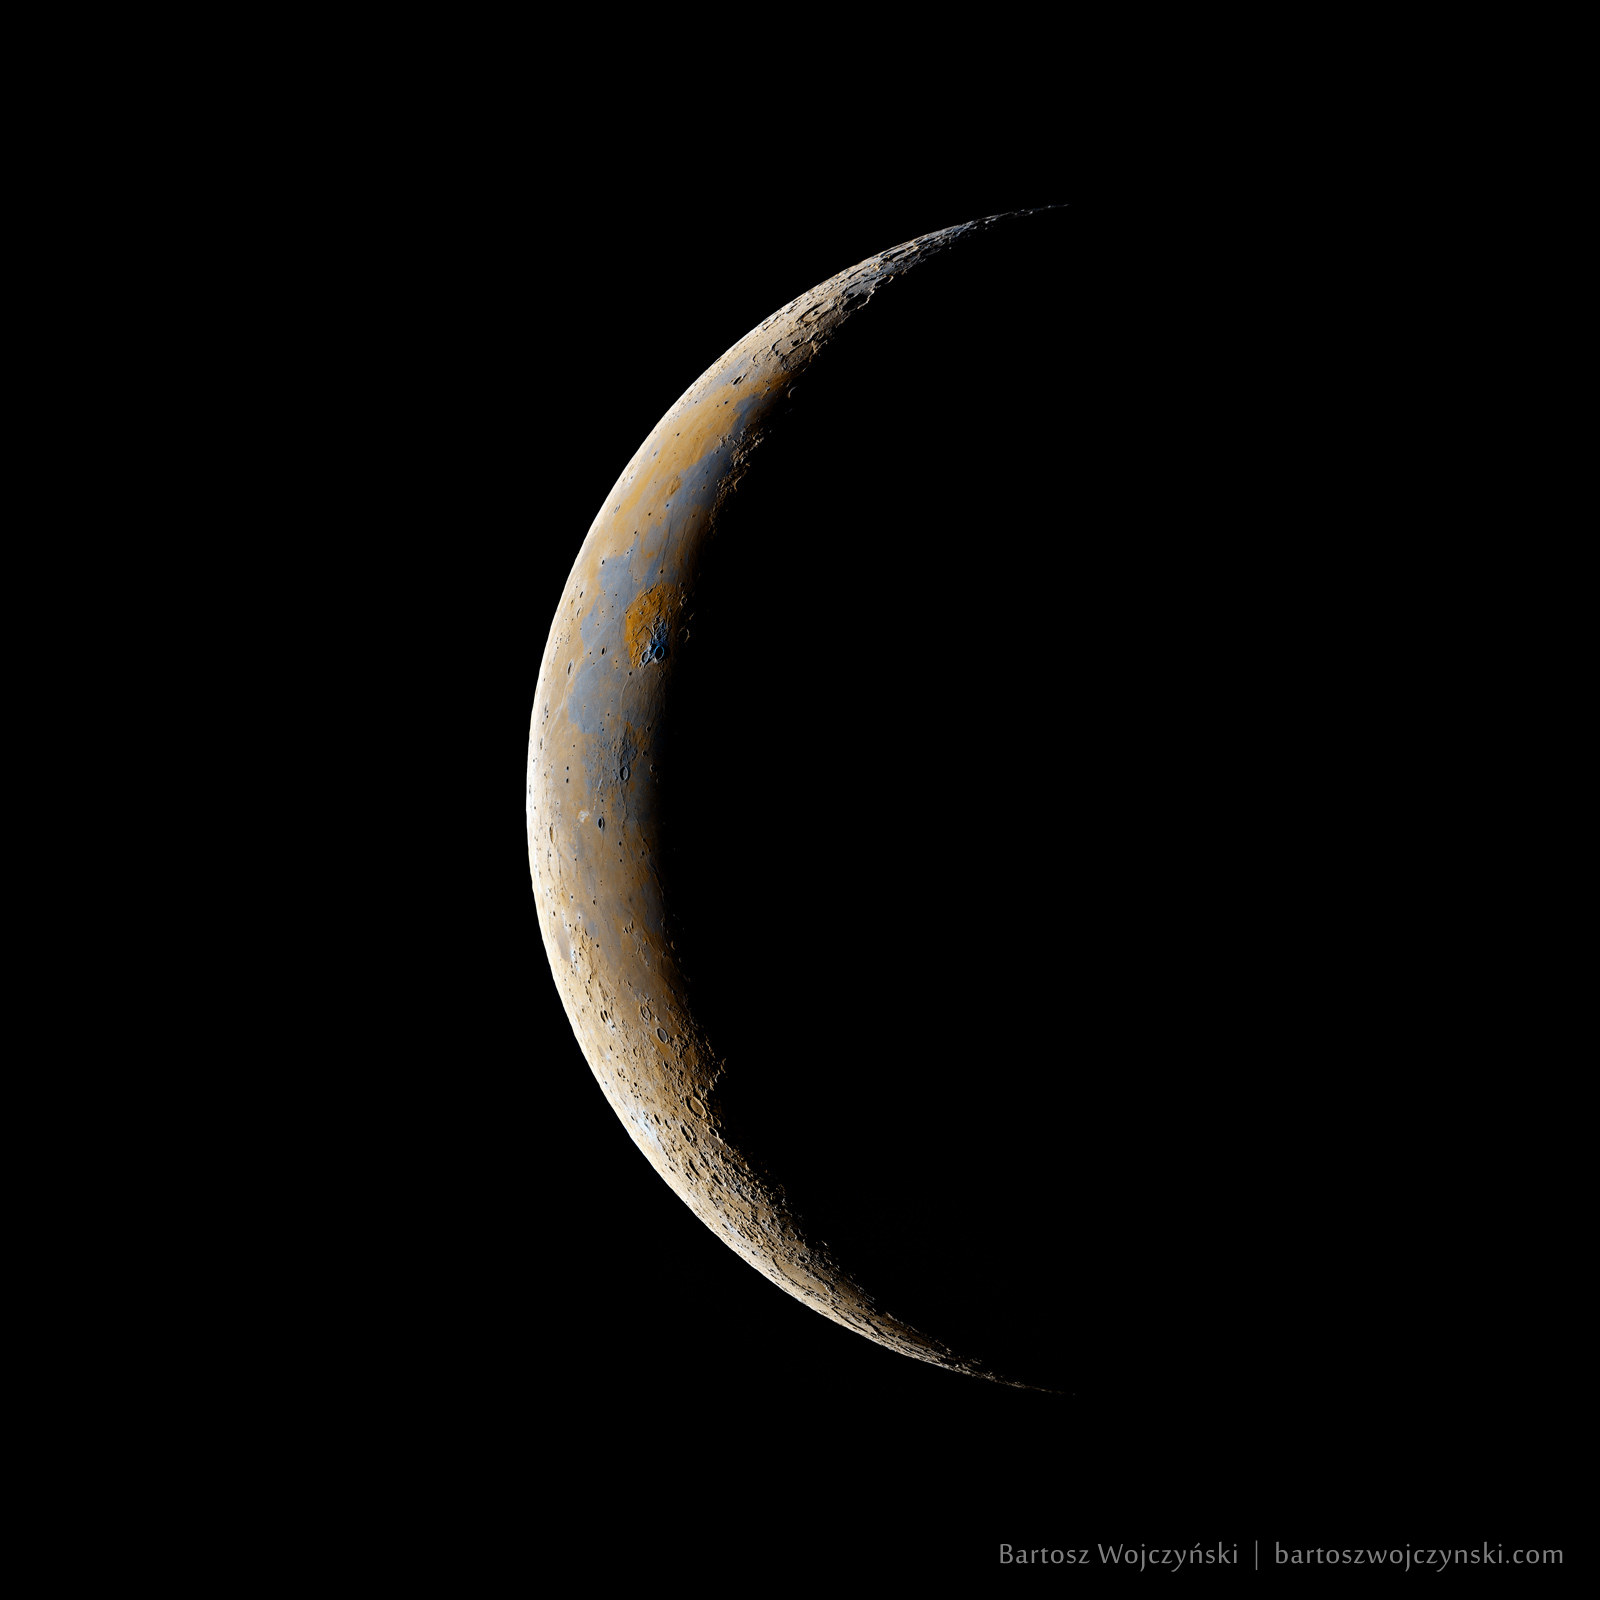 11% Waning Crescent Moon by Bartosz Wojczyński